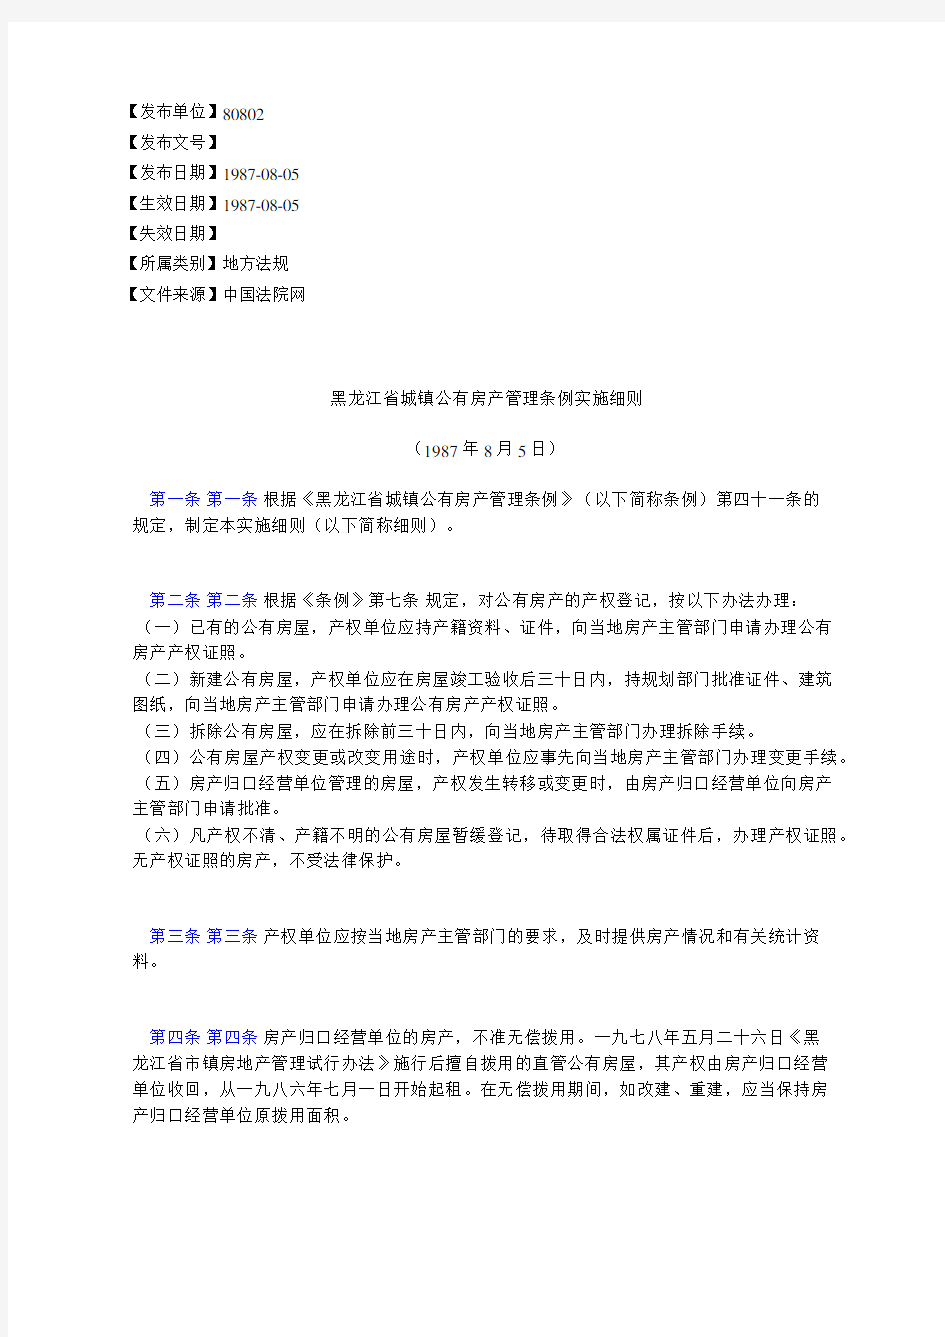 黑龙江省城镇公有房产管理条例实施细则